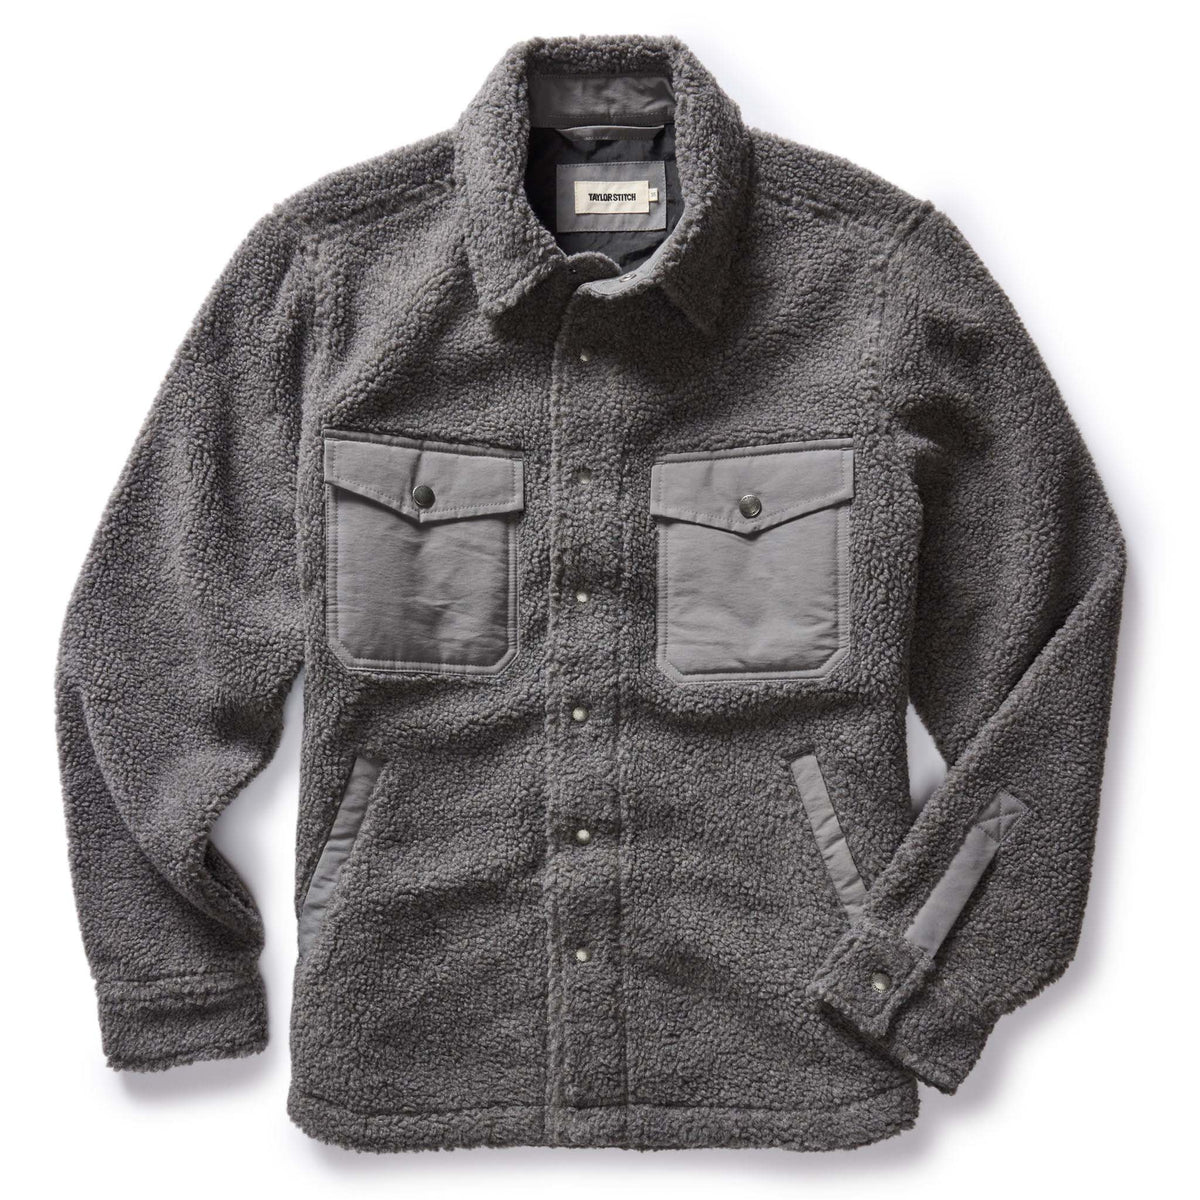 The Timberline Jacket Greystone Fleece